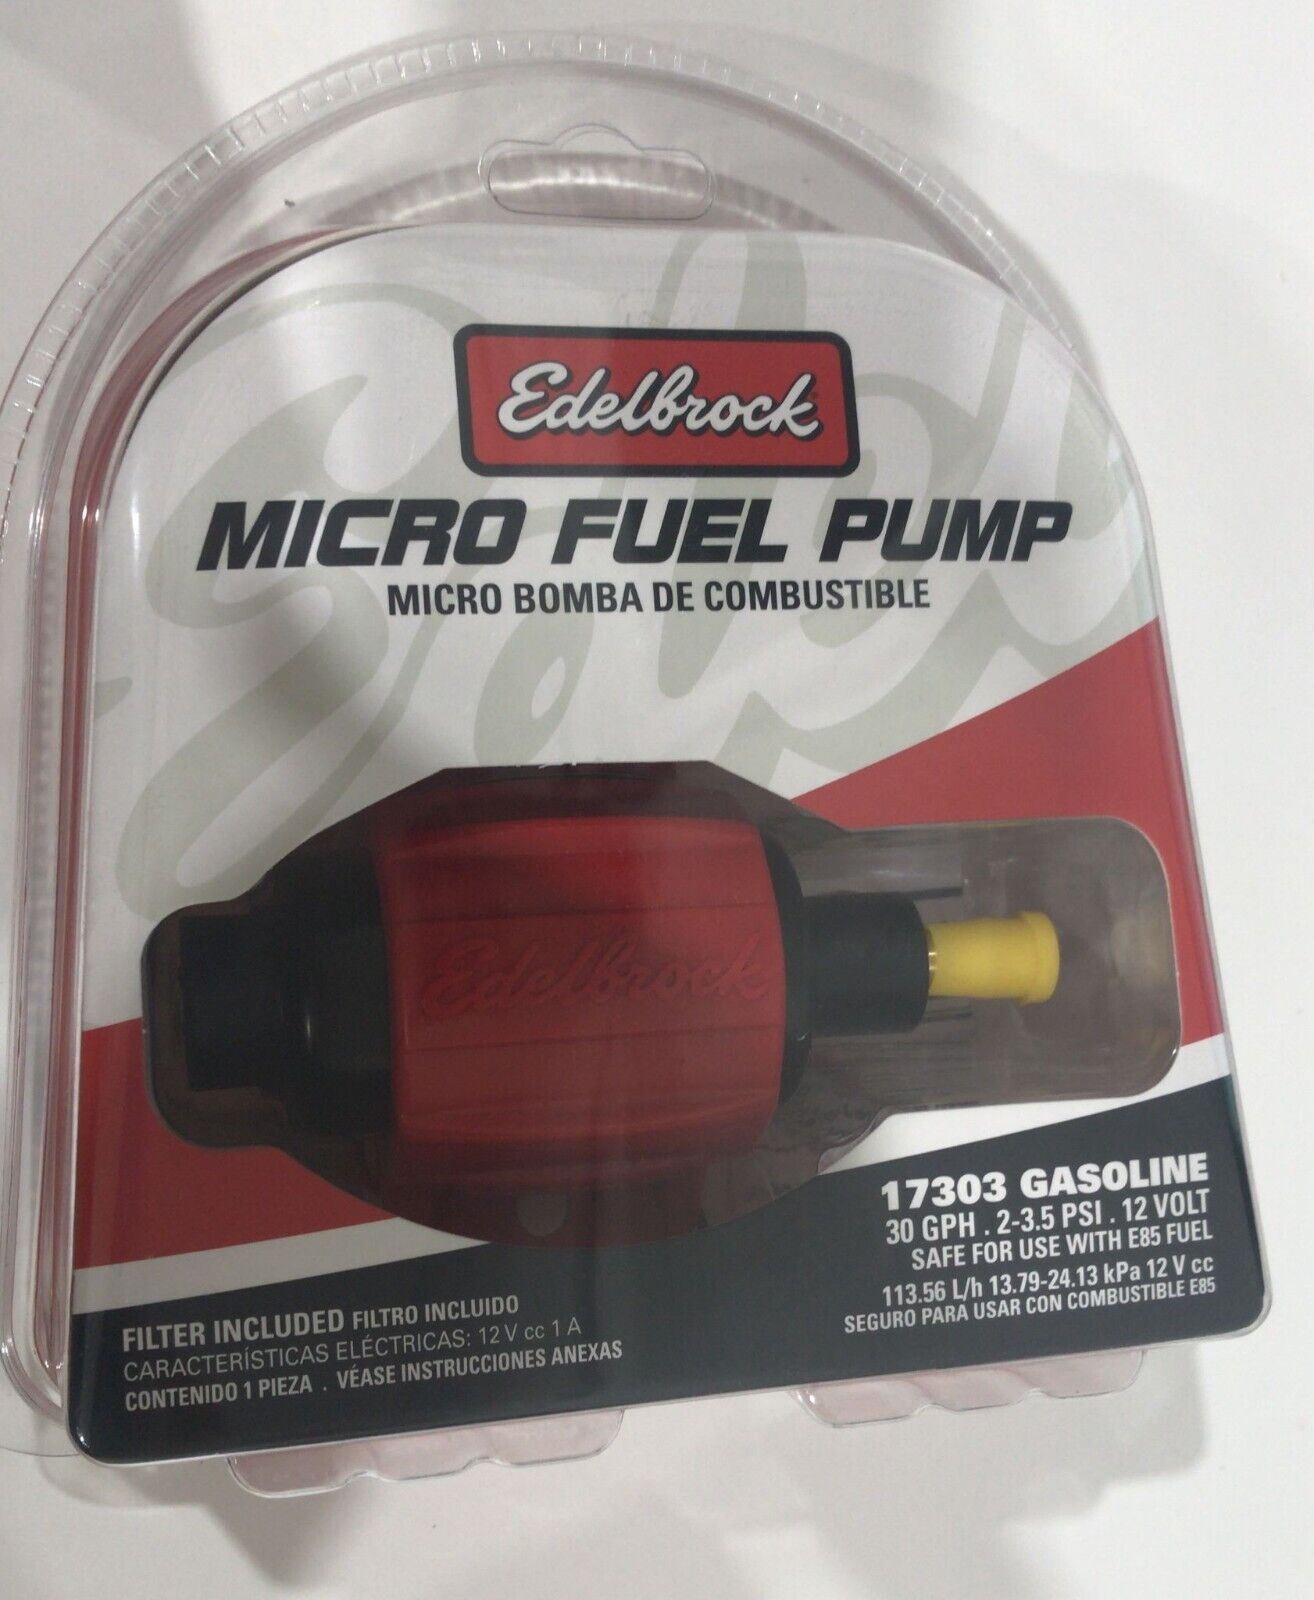 Edelbrock 17303 Micro Fuel Pump, 30 GPH, Gas (a7)